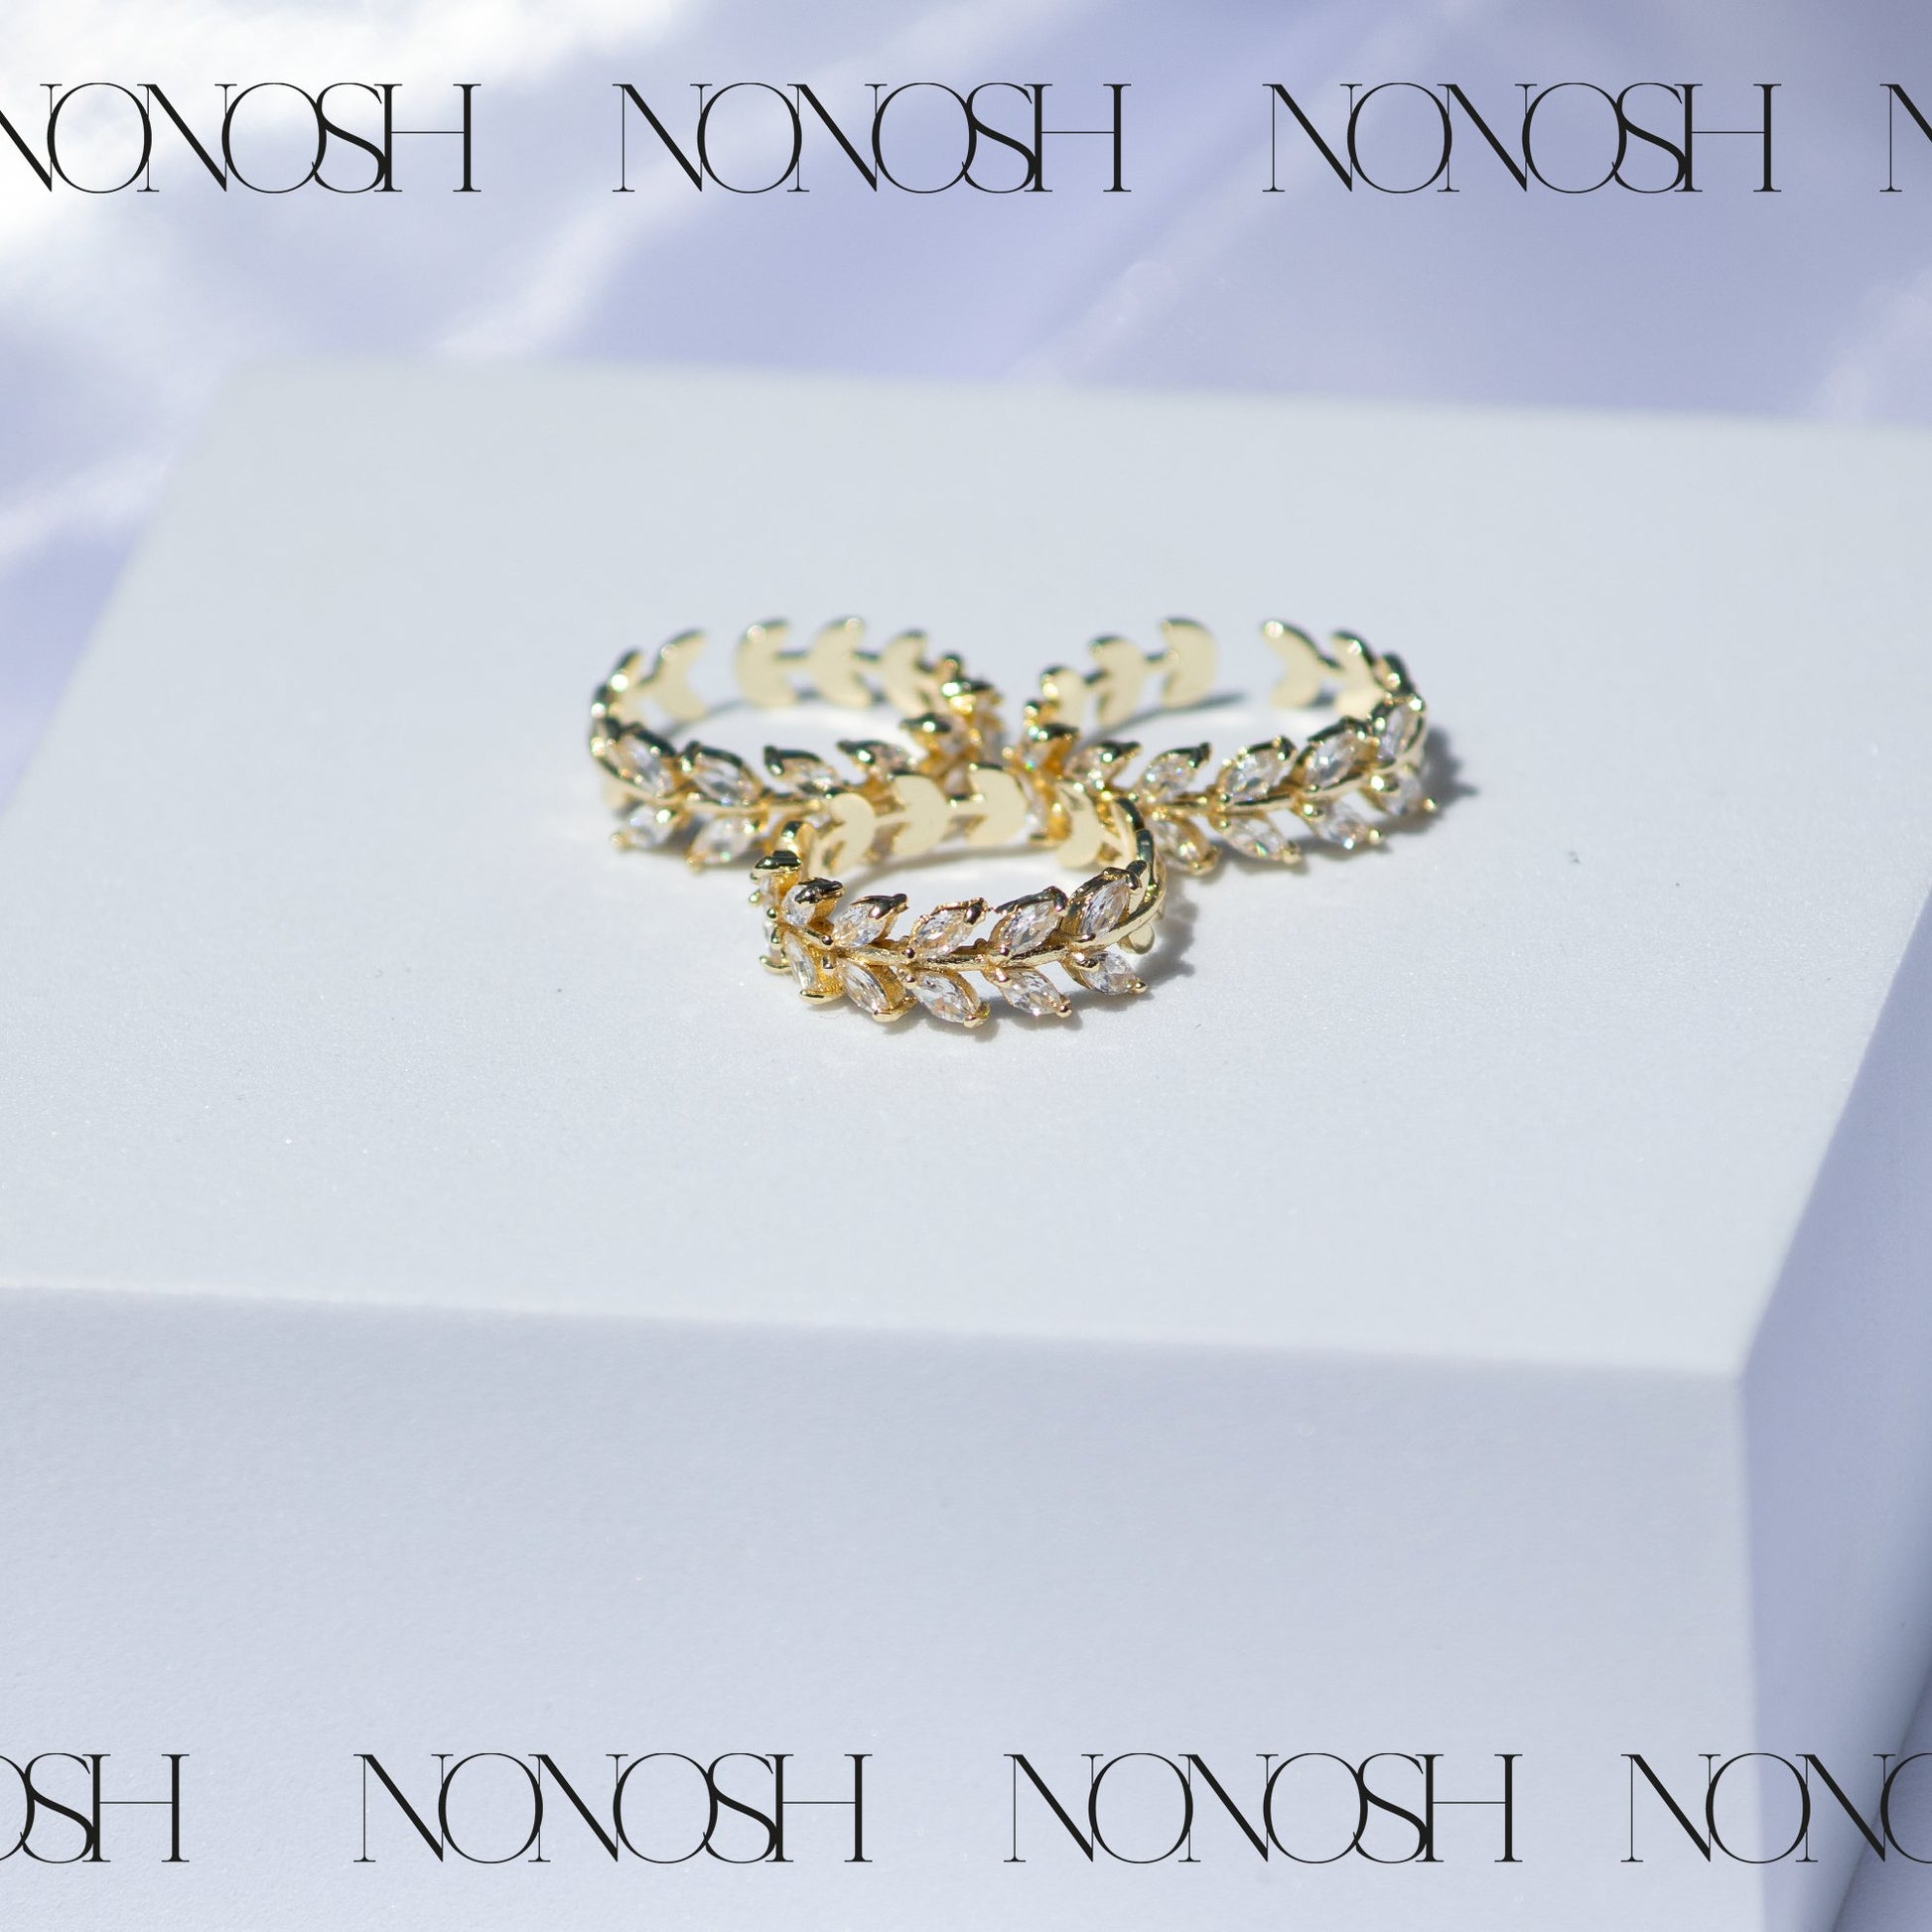 18k vergoldeter Ring Flora Verstellbar - NONOSH